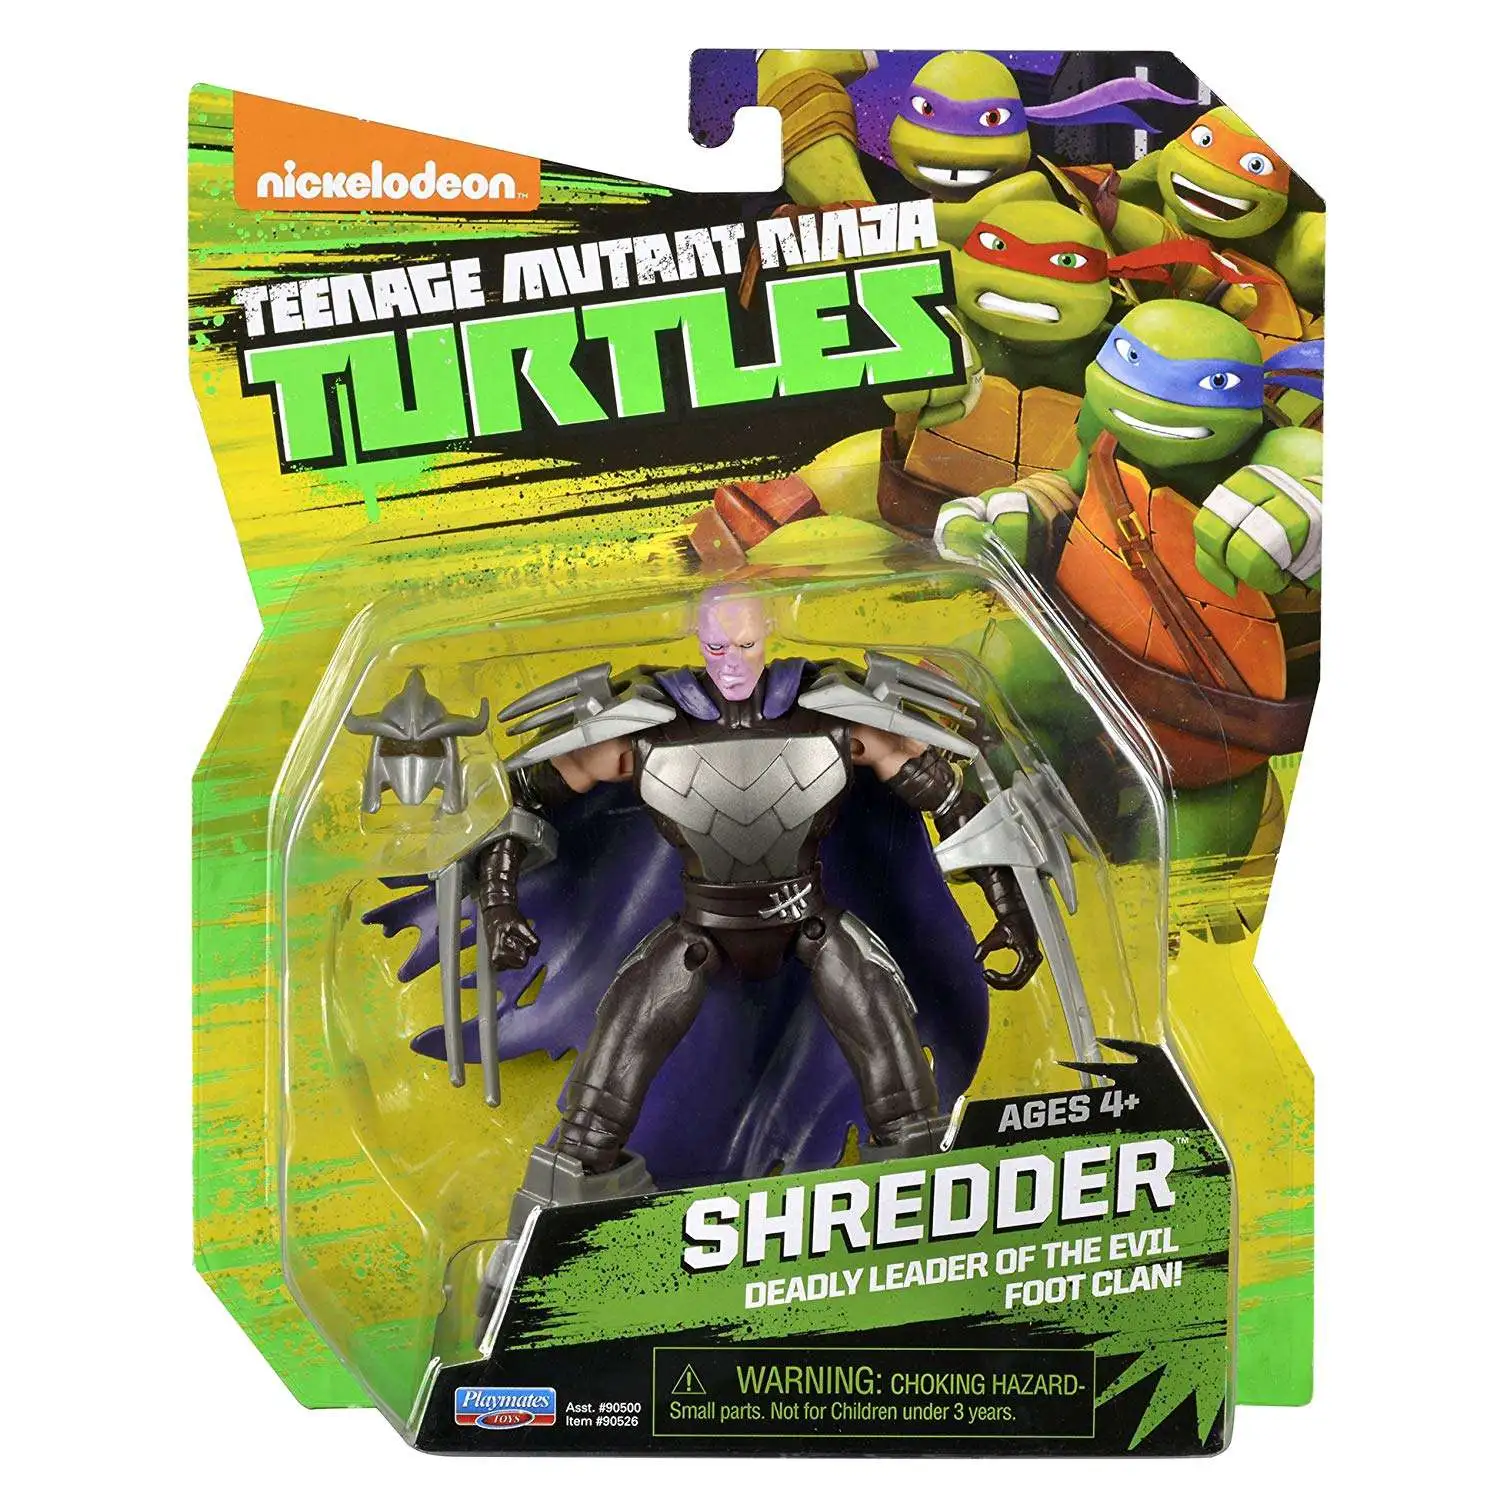 Shredder, Nickelodeon